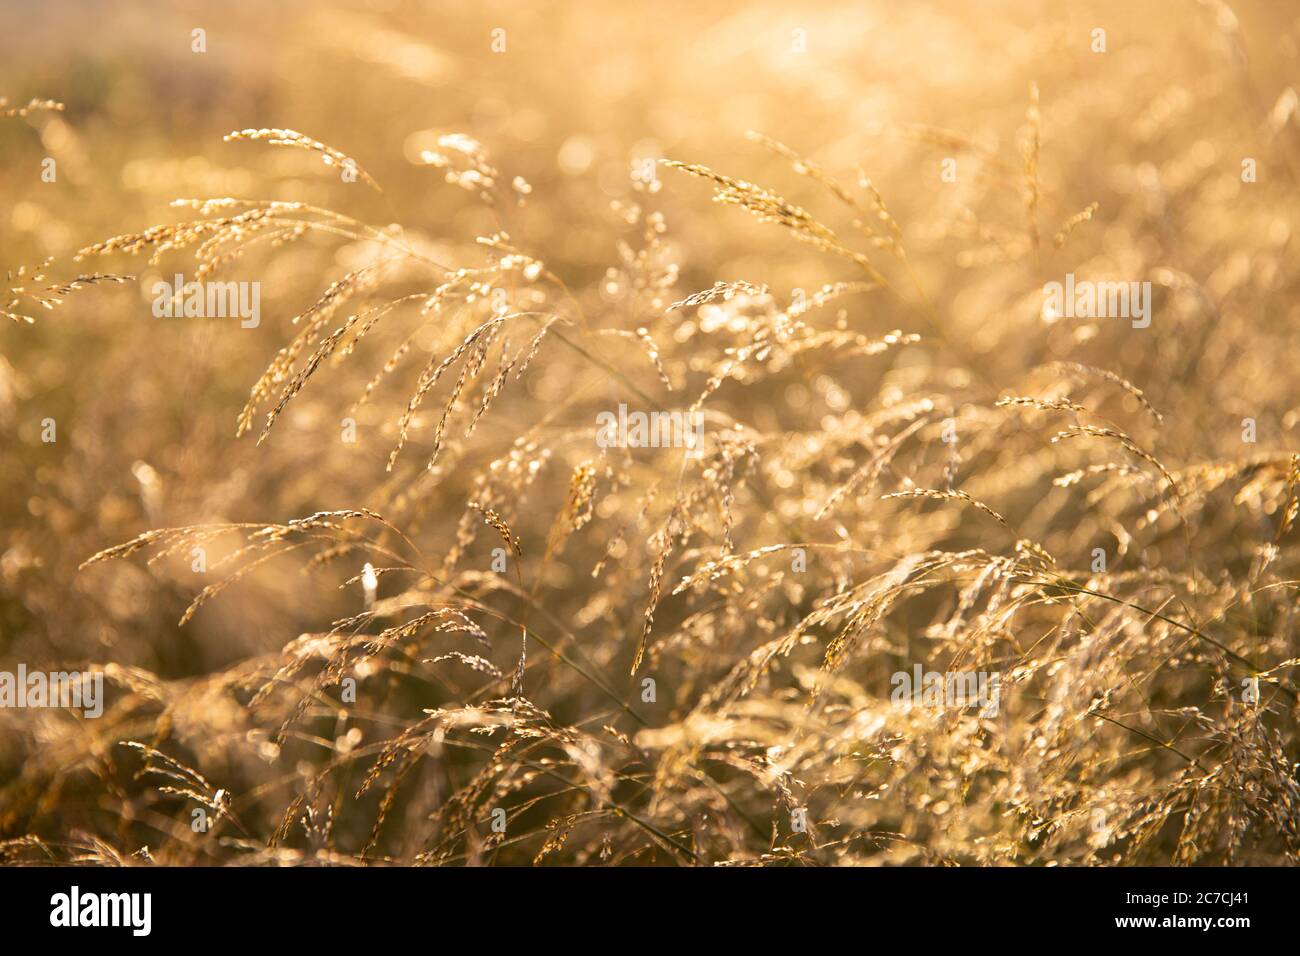 Foyer doux sélectif de l'herbe sèche des prés, roseaux, tiges soufflant dans le vent à la lumière dorée du coucher du soleil. Heure d'été Banque D'Images